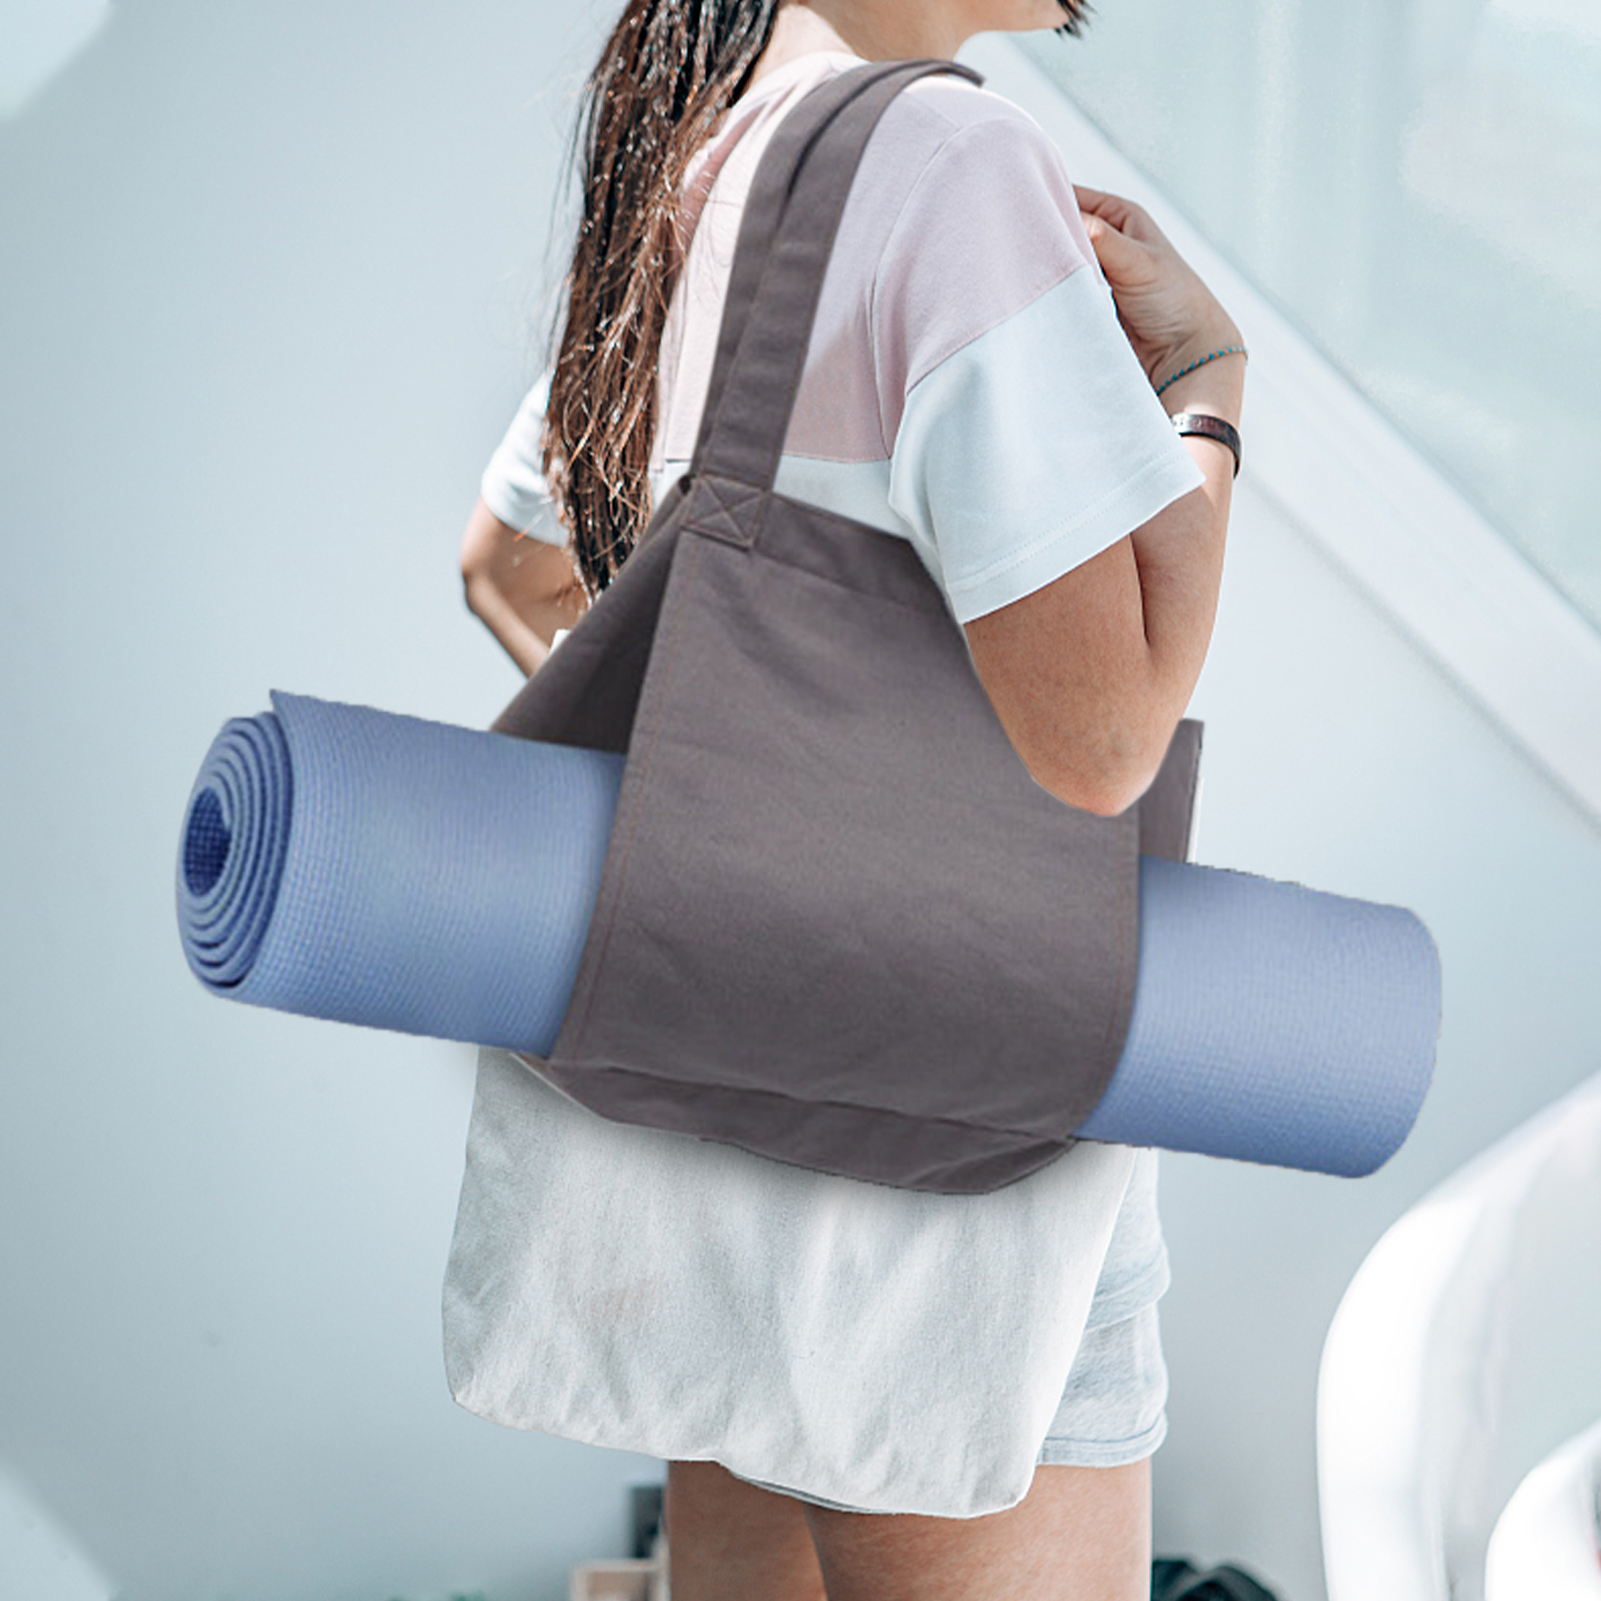 Yoga Mat Väskor Gymväska med yogamathållare Yoga Mat Bag Yoga Tote Carrier Axelväska Bär all Tote för Office Yoga Pilates